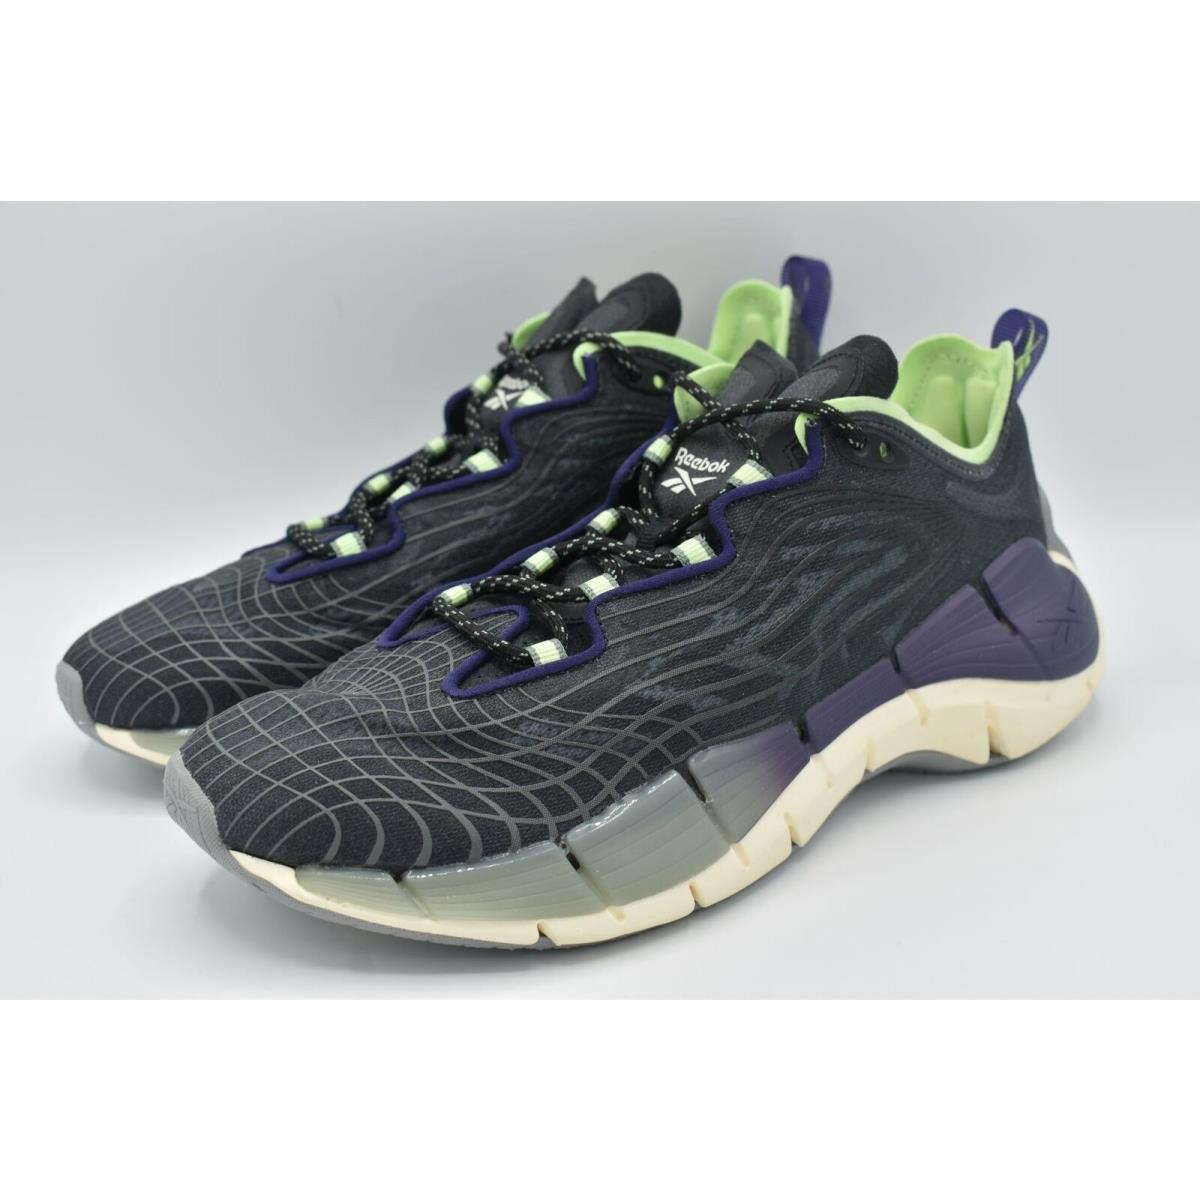 Reebok Womens Size 8 Zig Kinetica II Black Purple Mint Running Shoes Sneakers